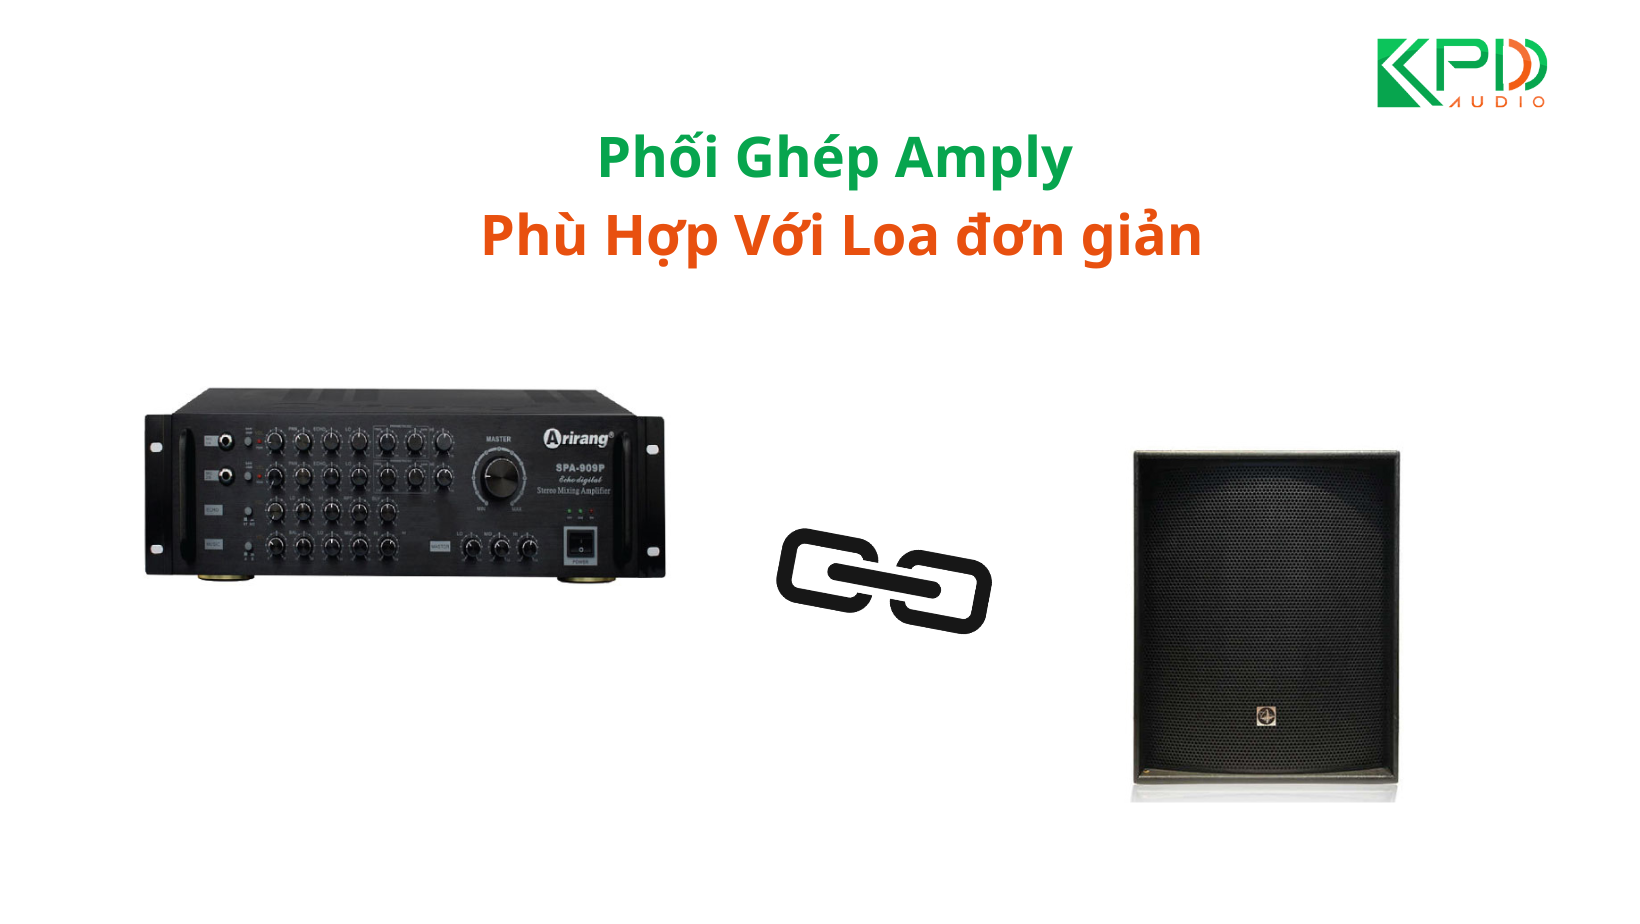 Huong-dan-Phoi-Ghep-Amply-Phu-Hop-Voi-Loa-don-gian